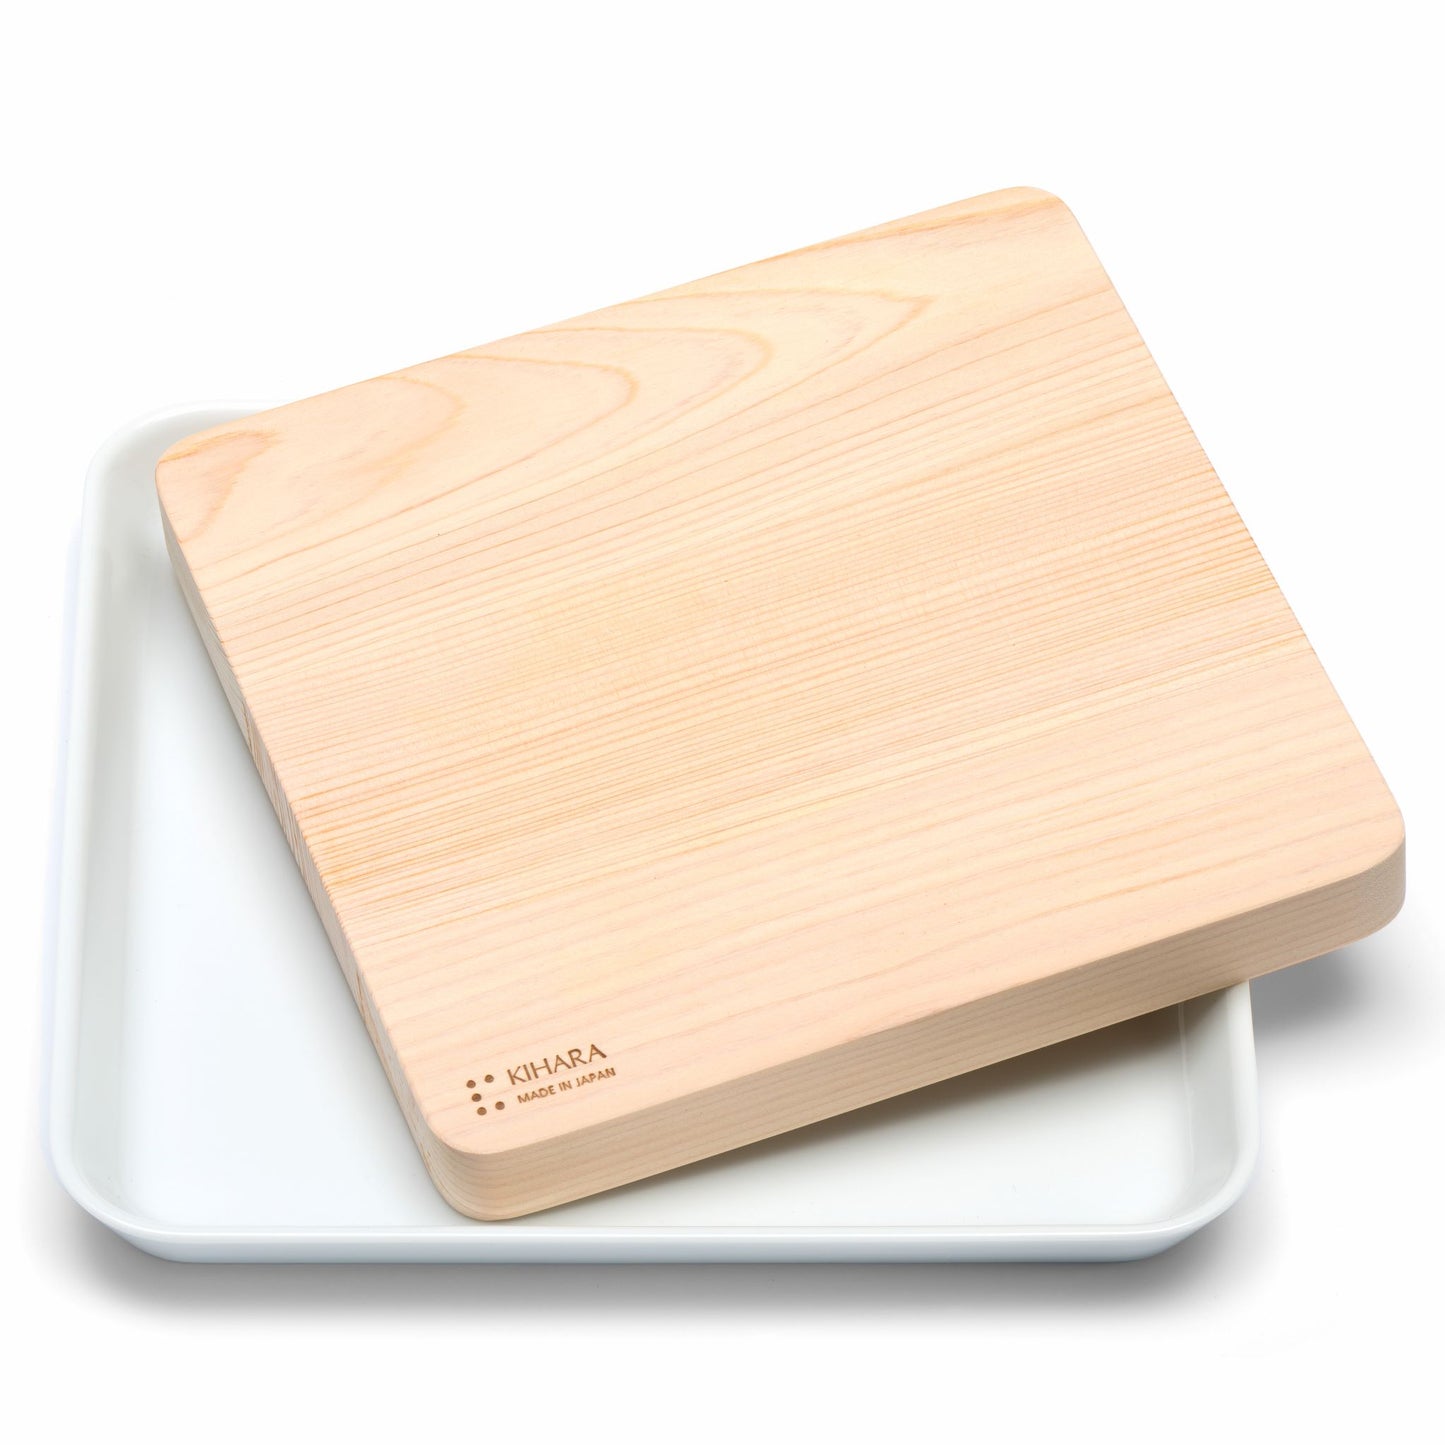 Kihara - Sitaku - Hinoki cutting board with porcelain plate